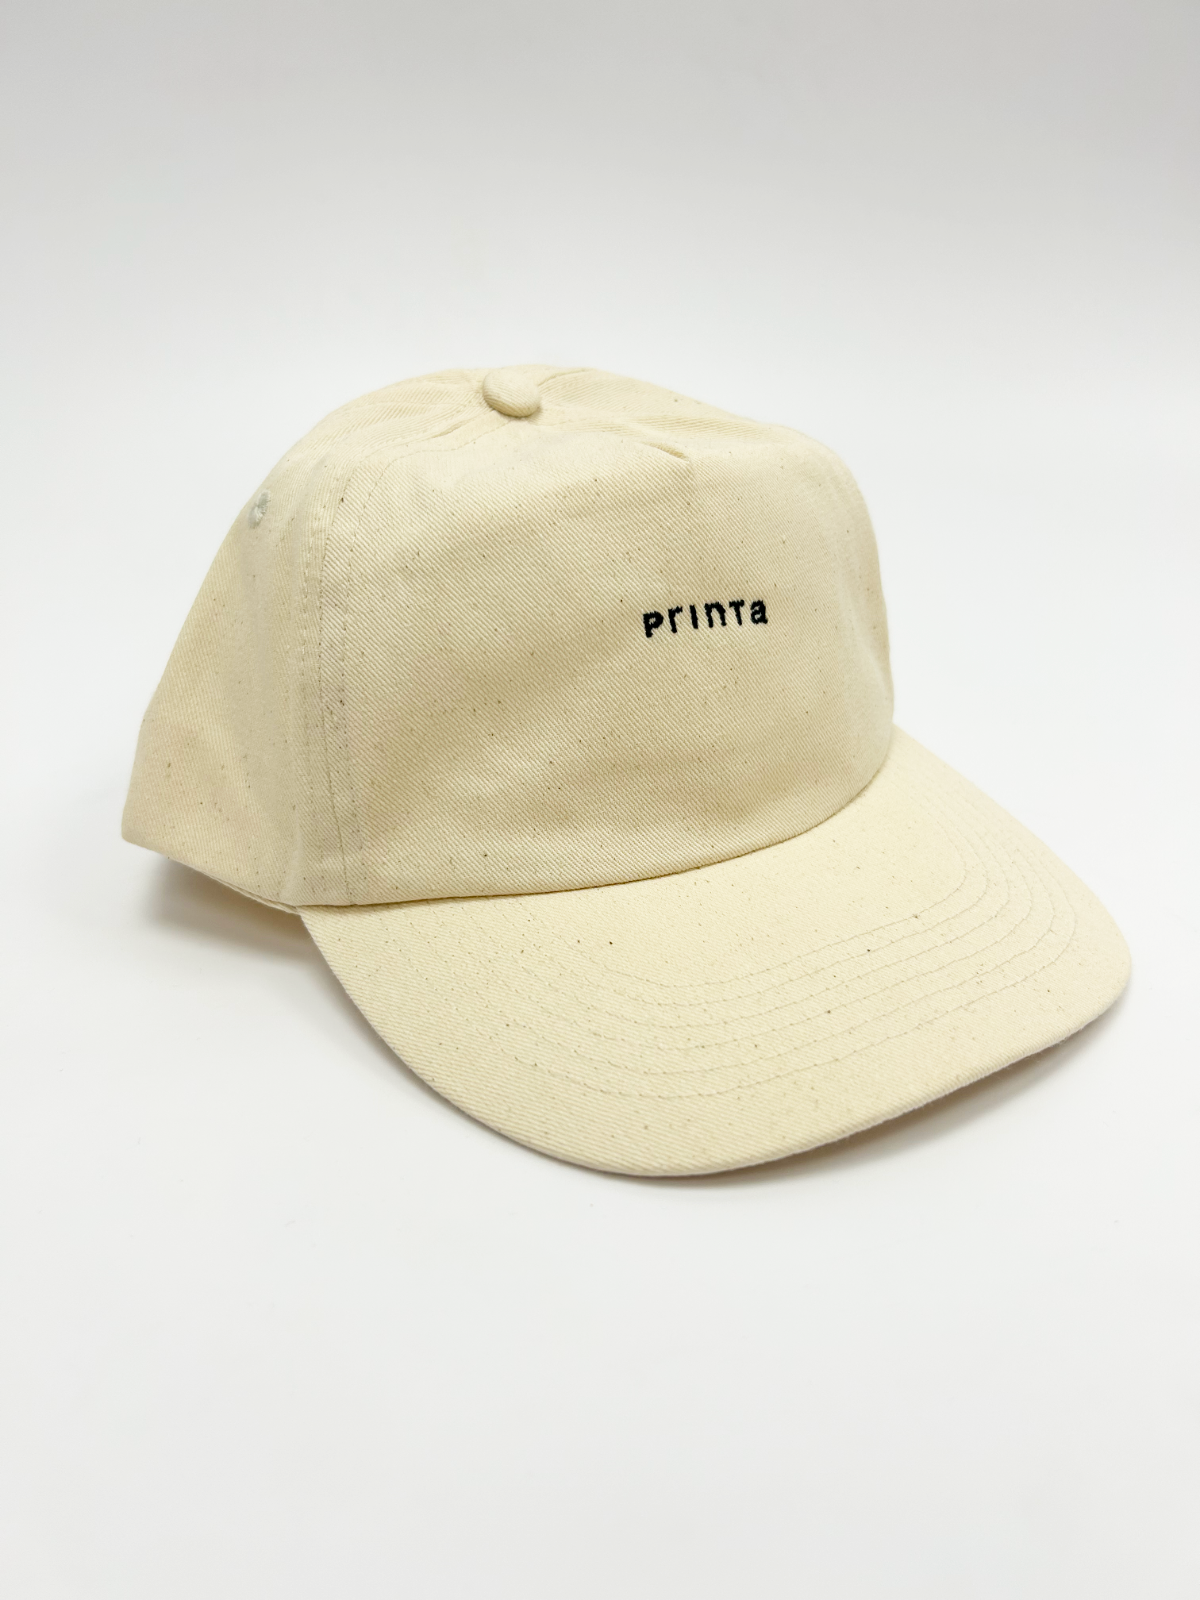 "Printa" natural embroidered baseball cap